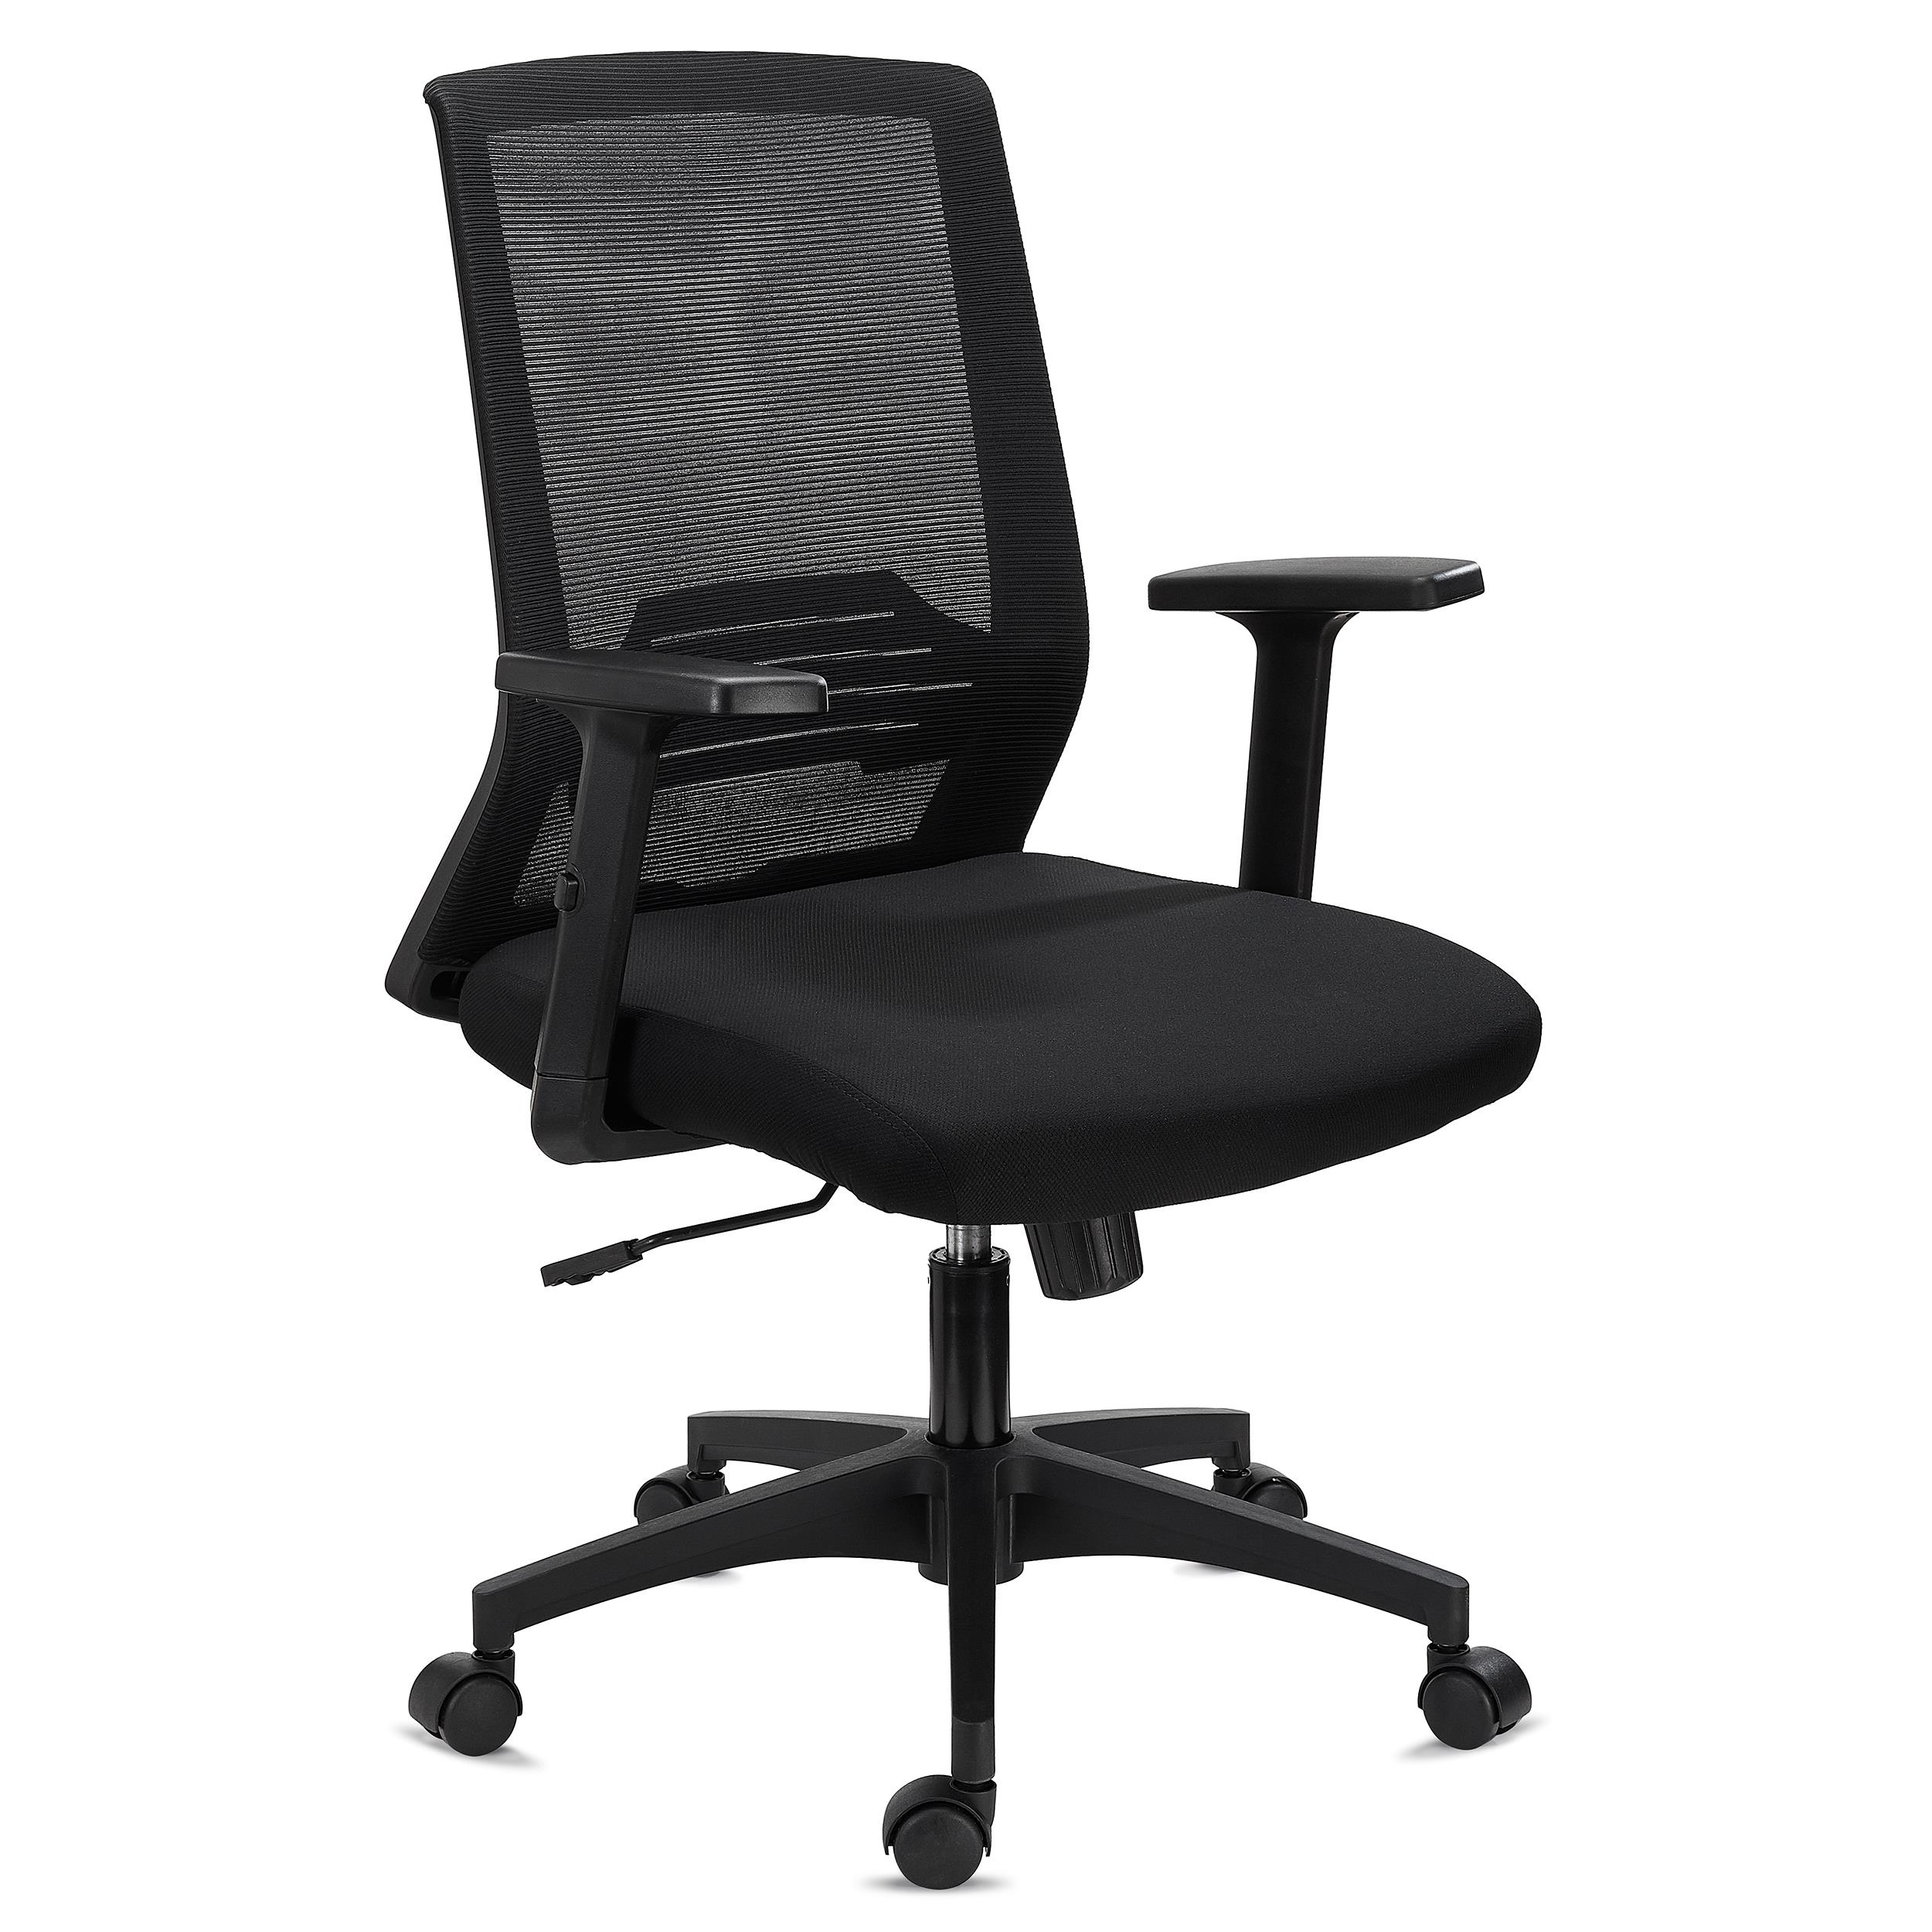 Chaise de Bureau MIAMI, Support Lombaire, Accoudoirs Ajustables, Confortable et Robuste, Noir